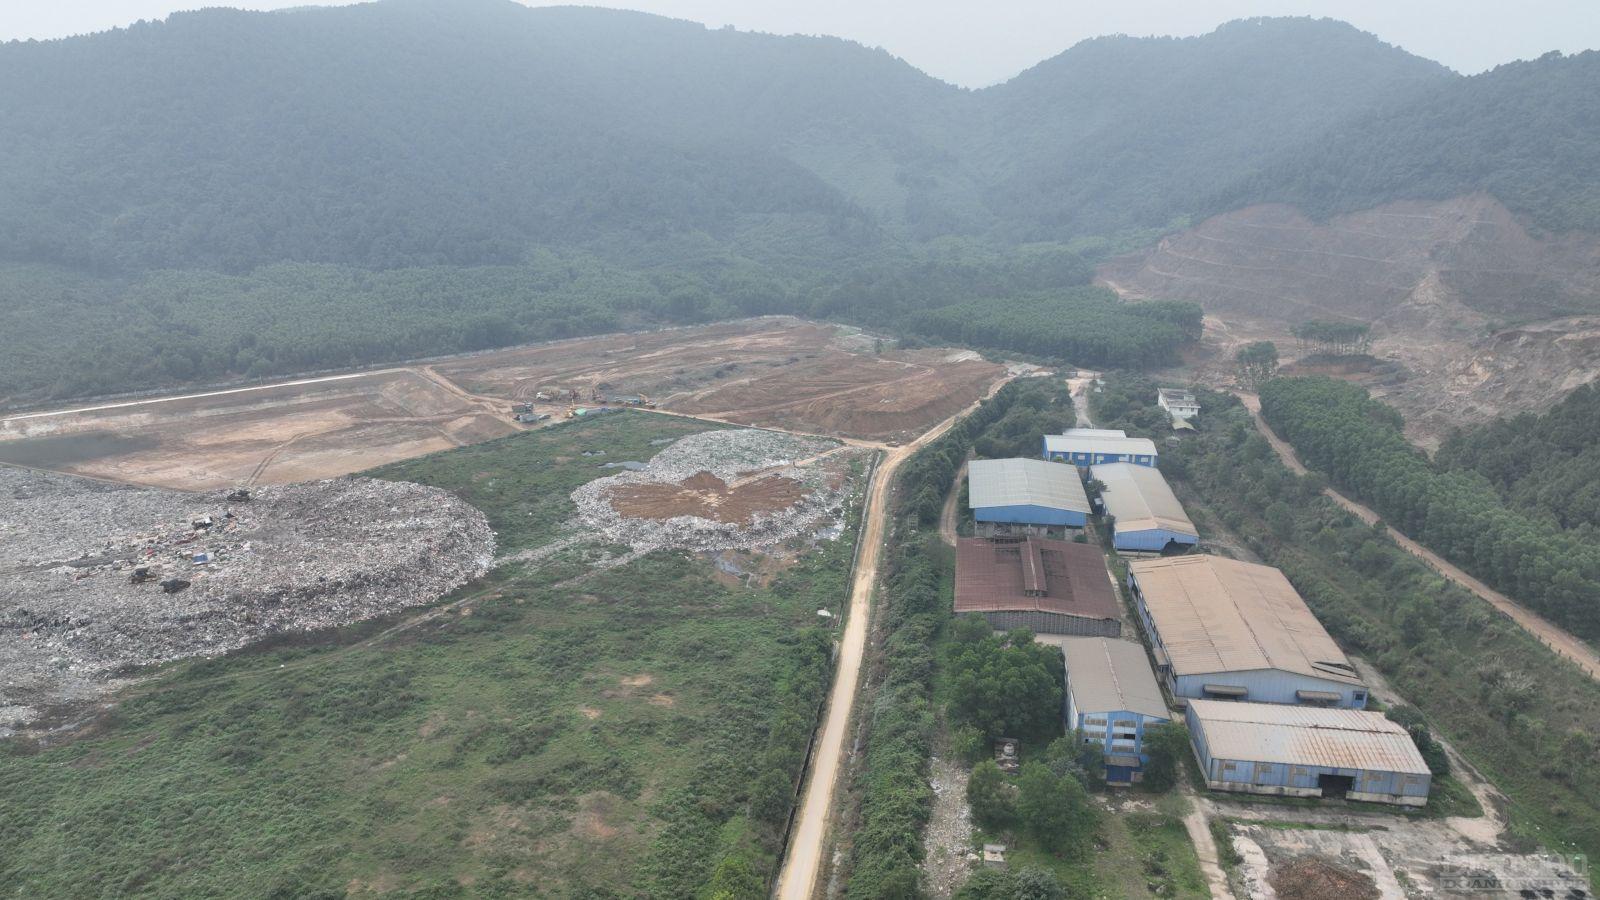 Bãi xử lý rác thải tập trung của tỉnh Nghệ An tại xã Nghi Yên, huyện Nghi Lộc hiện nay đang trở thành vấn đề nan giải vì nguy cơ ô nhiễm môi trường cao trong khi hàng chục hộ dân bị ảnh hưởng chưa thể di dời, tái định cư hết